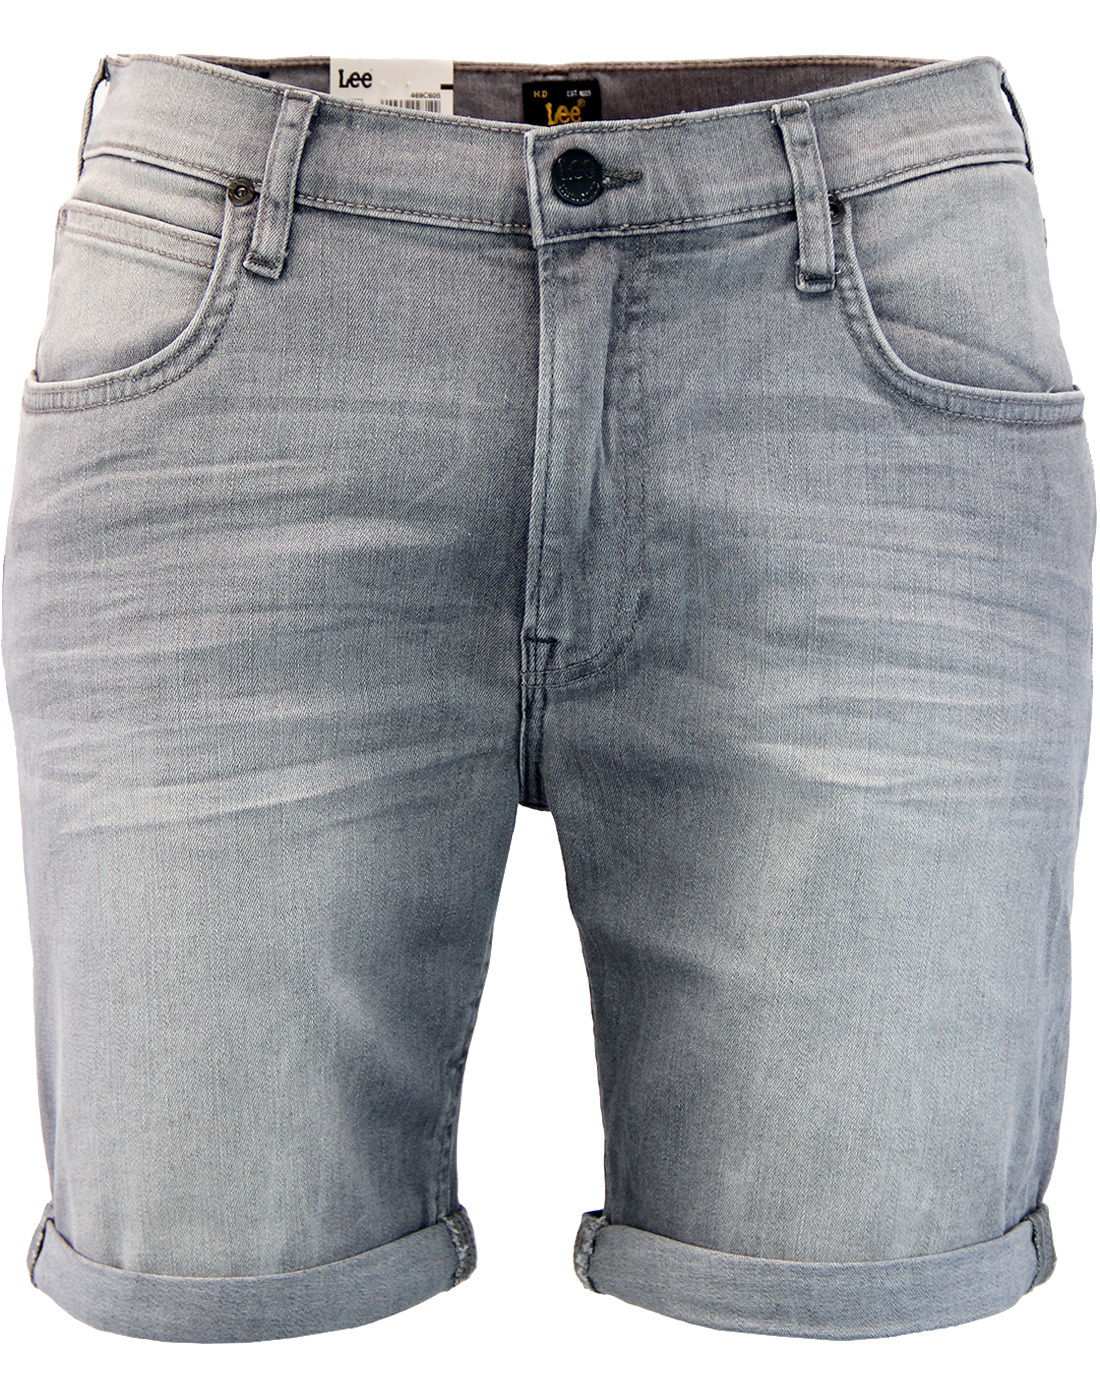 LEE Retro Indie Slim Fit 5 Pocket Denim Shorts in Grey